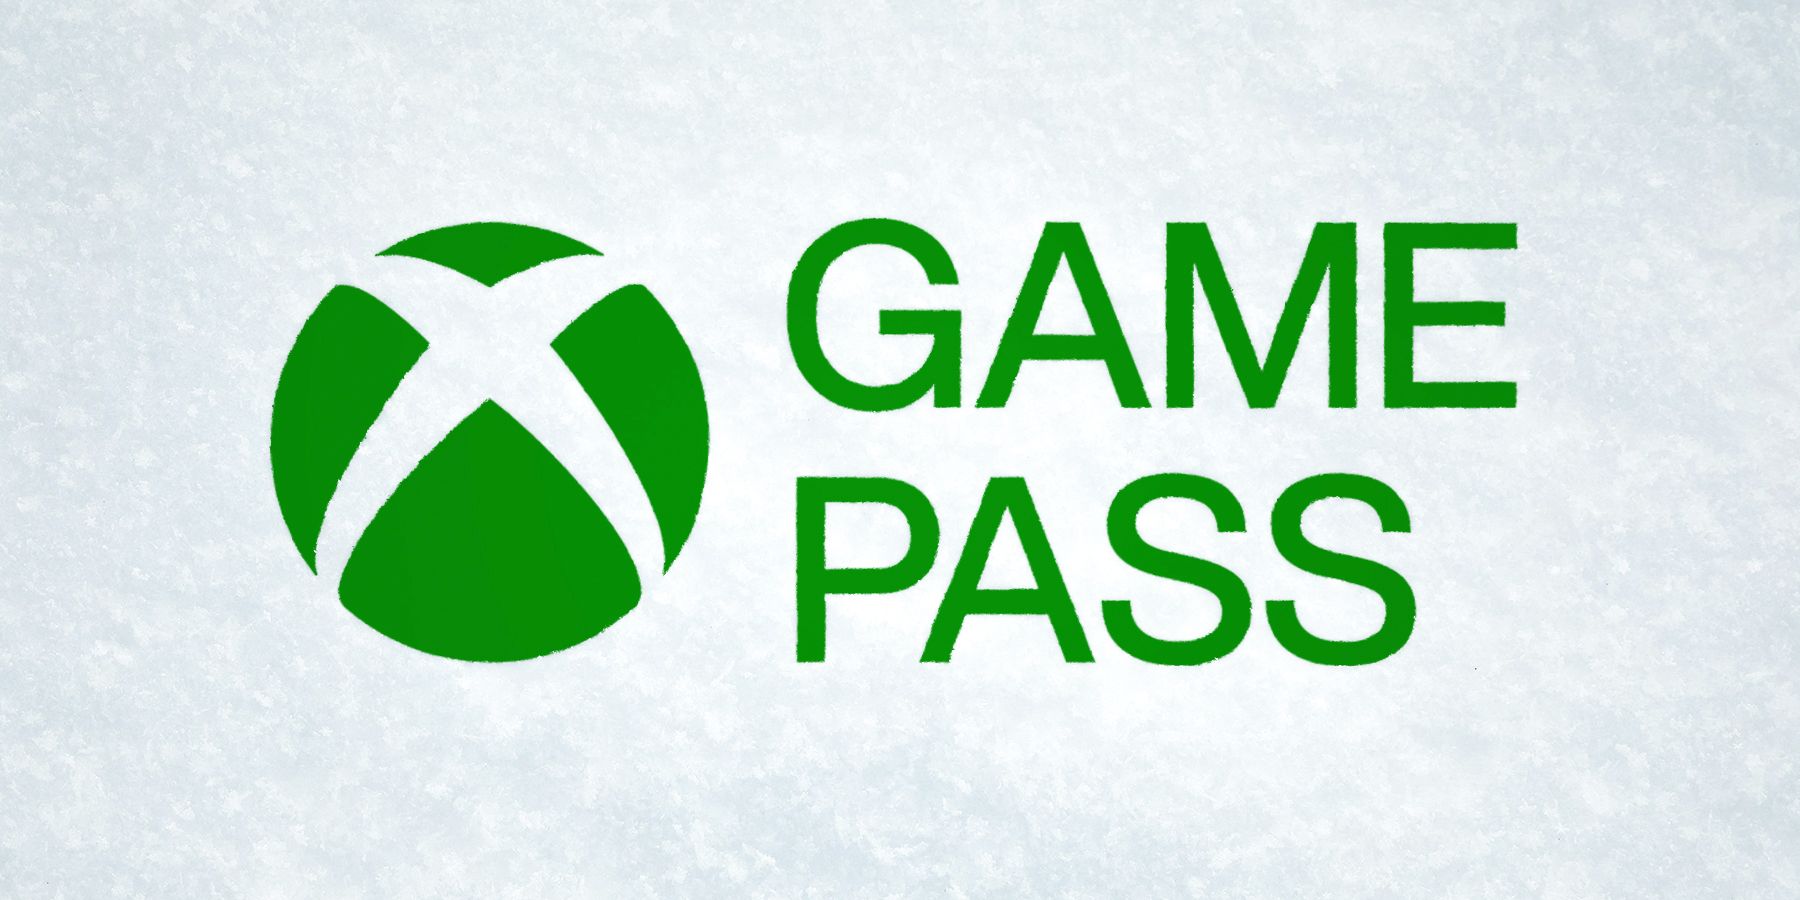 Xbox Game Pass abridged logo on snow